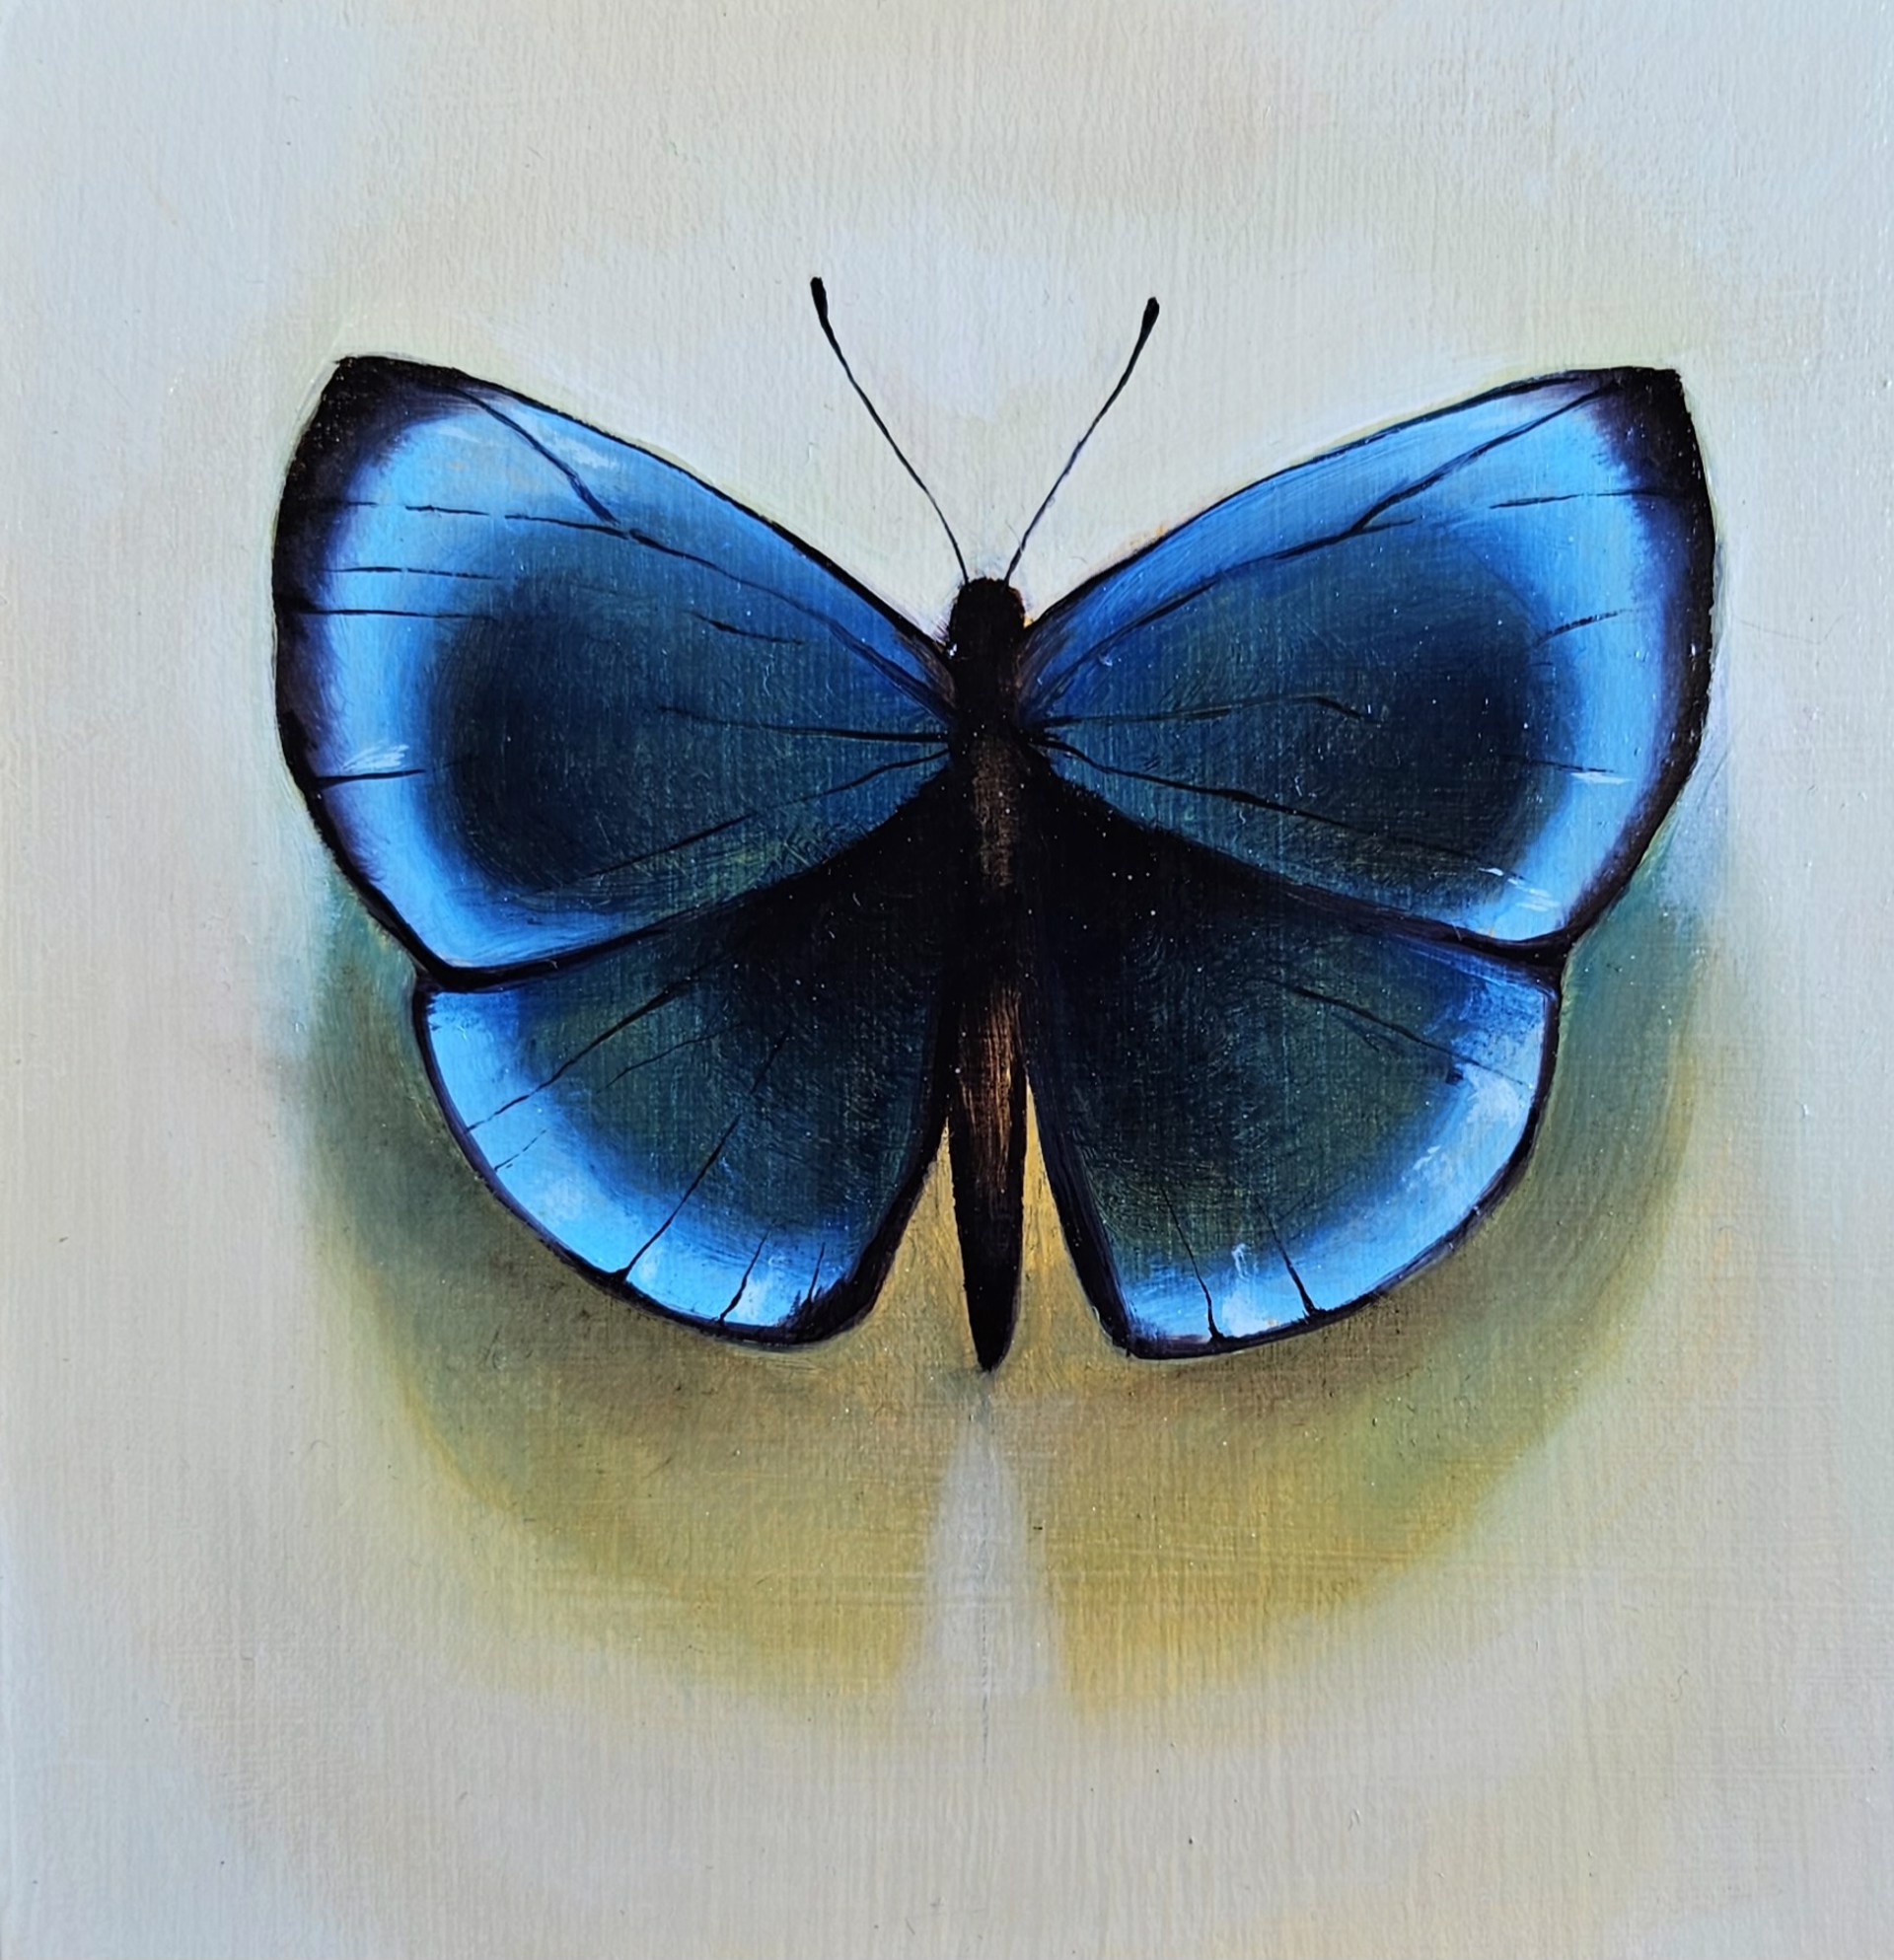 Untitled - Blue Butterfly by Ida Floreak